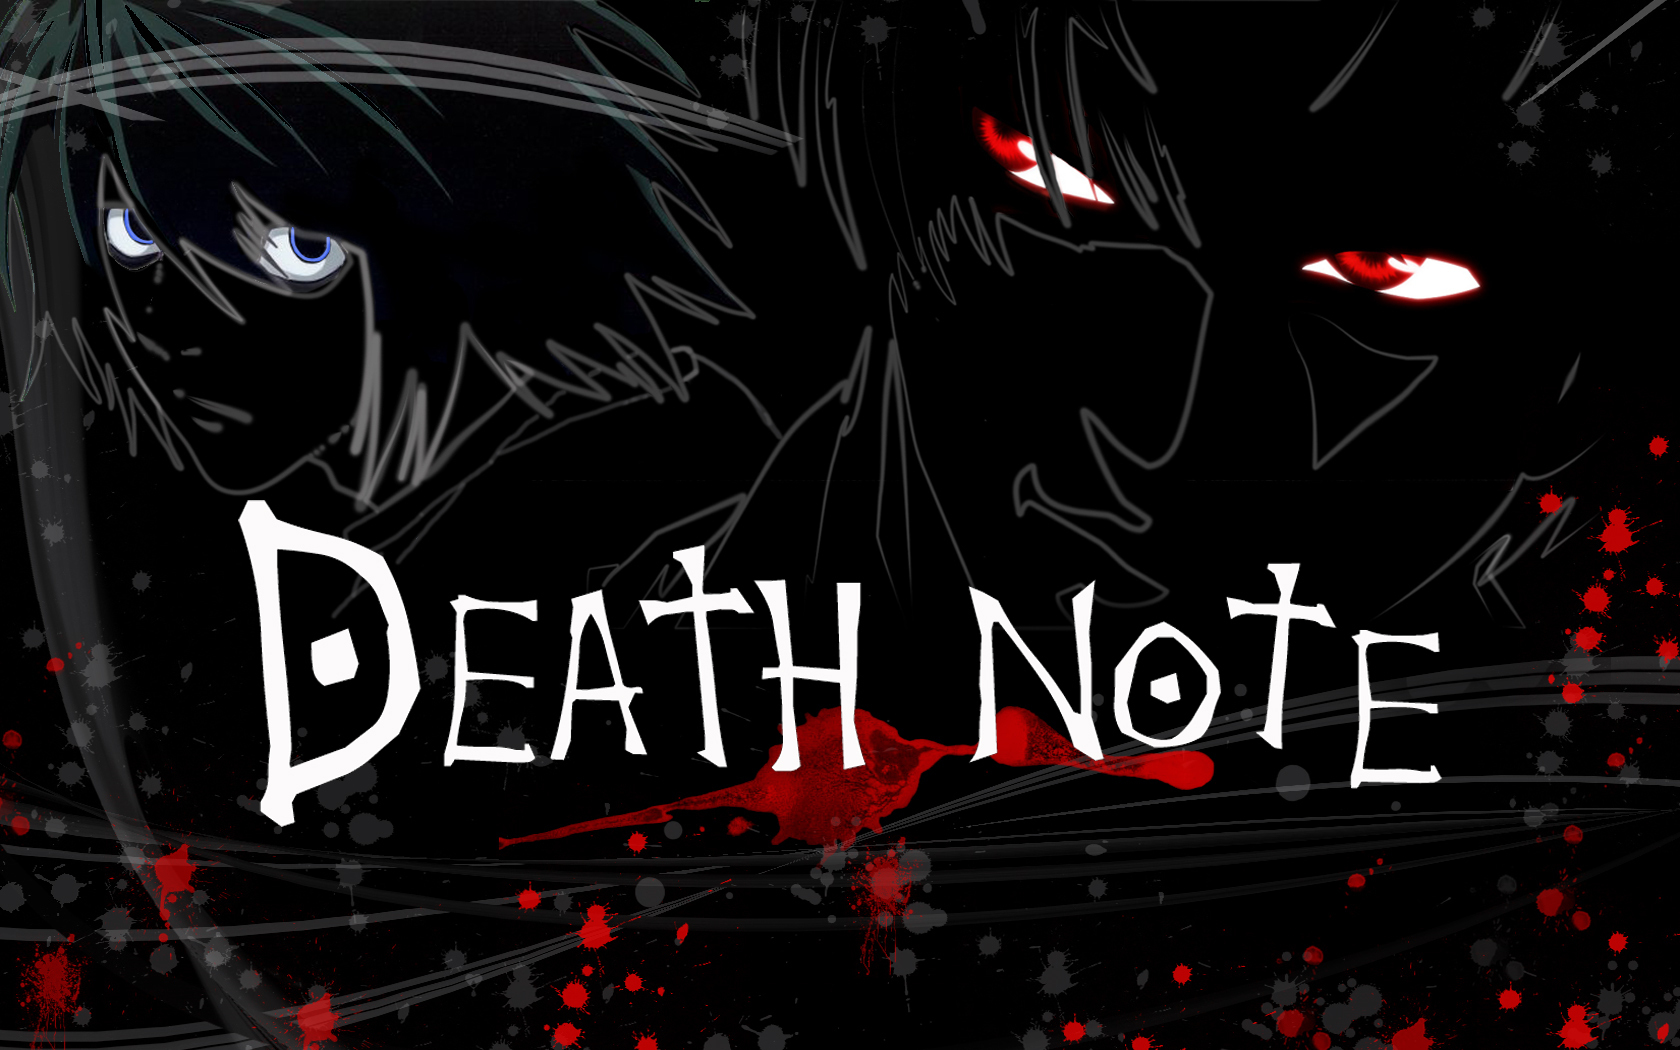 Adaptação live-action de Death Note ganha mais um ator - Falando